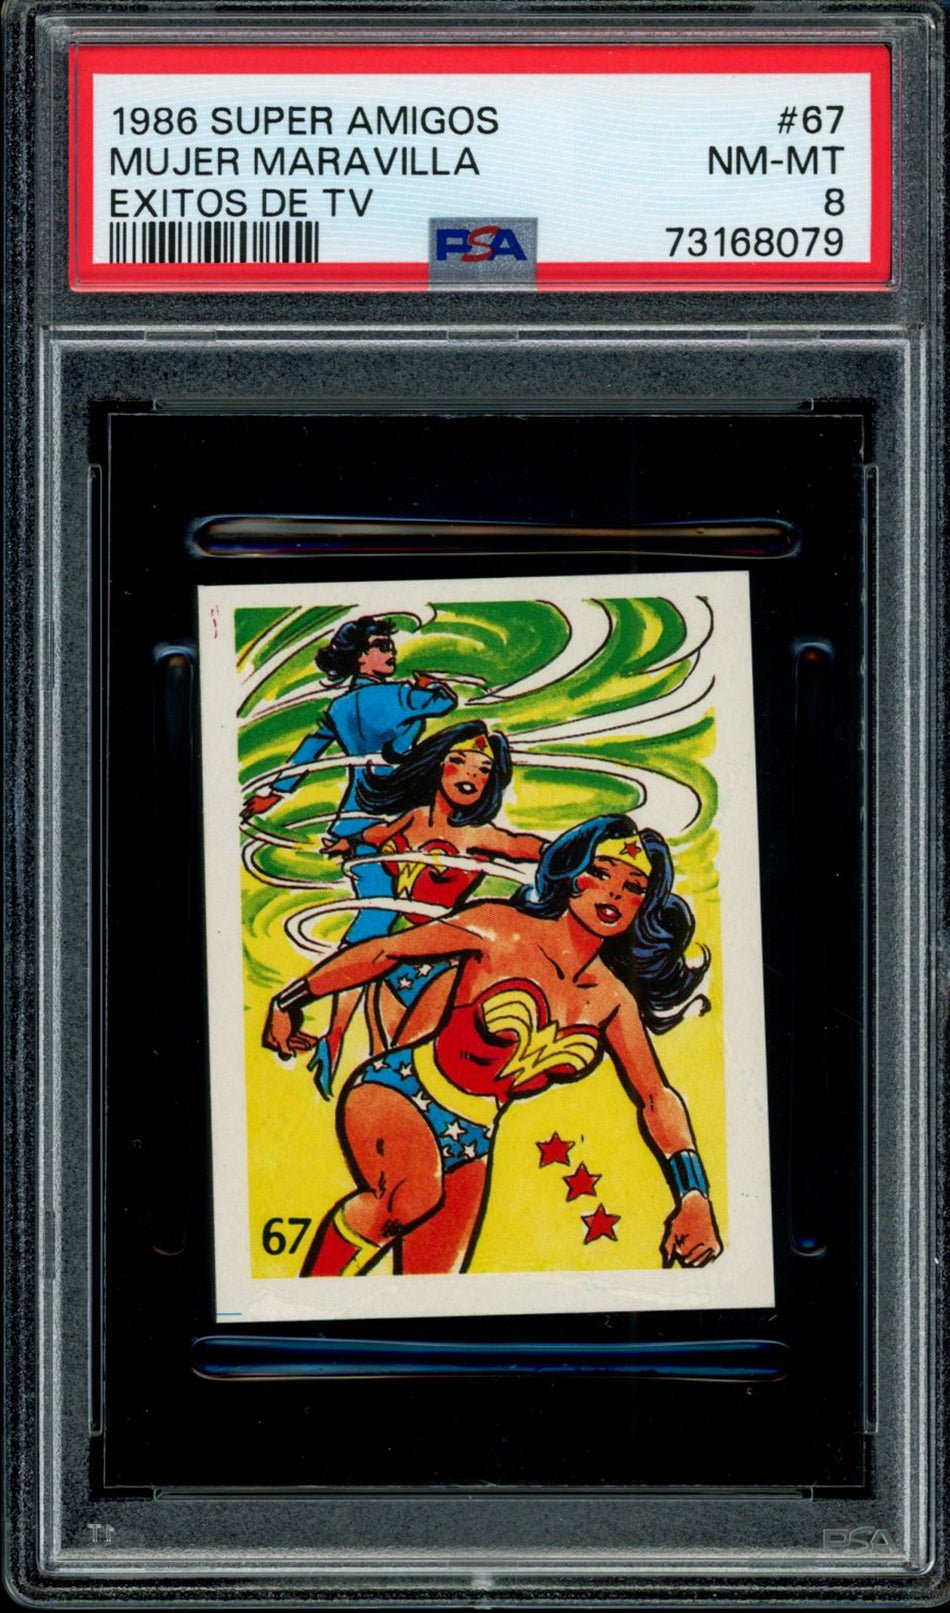 WONDER WOMAN PSA 8 1986 Reyauca Super Amigos Exitos de TV #67 DC Comics Base Graded Cards - Hobby Gems